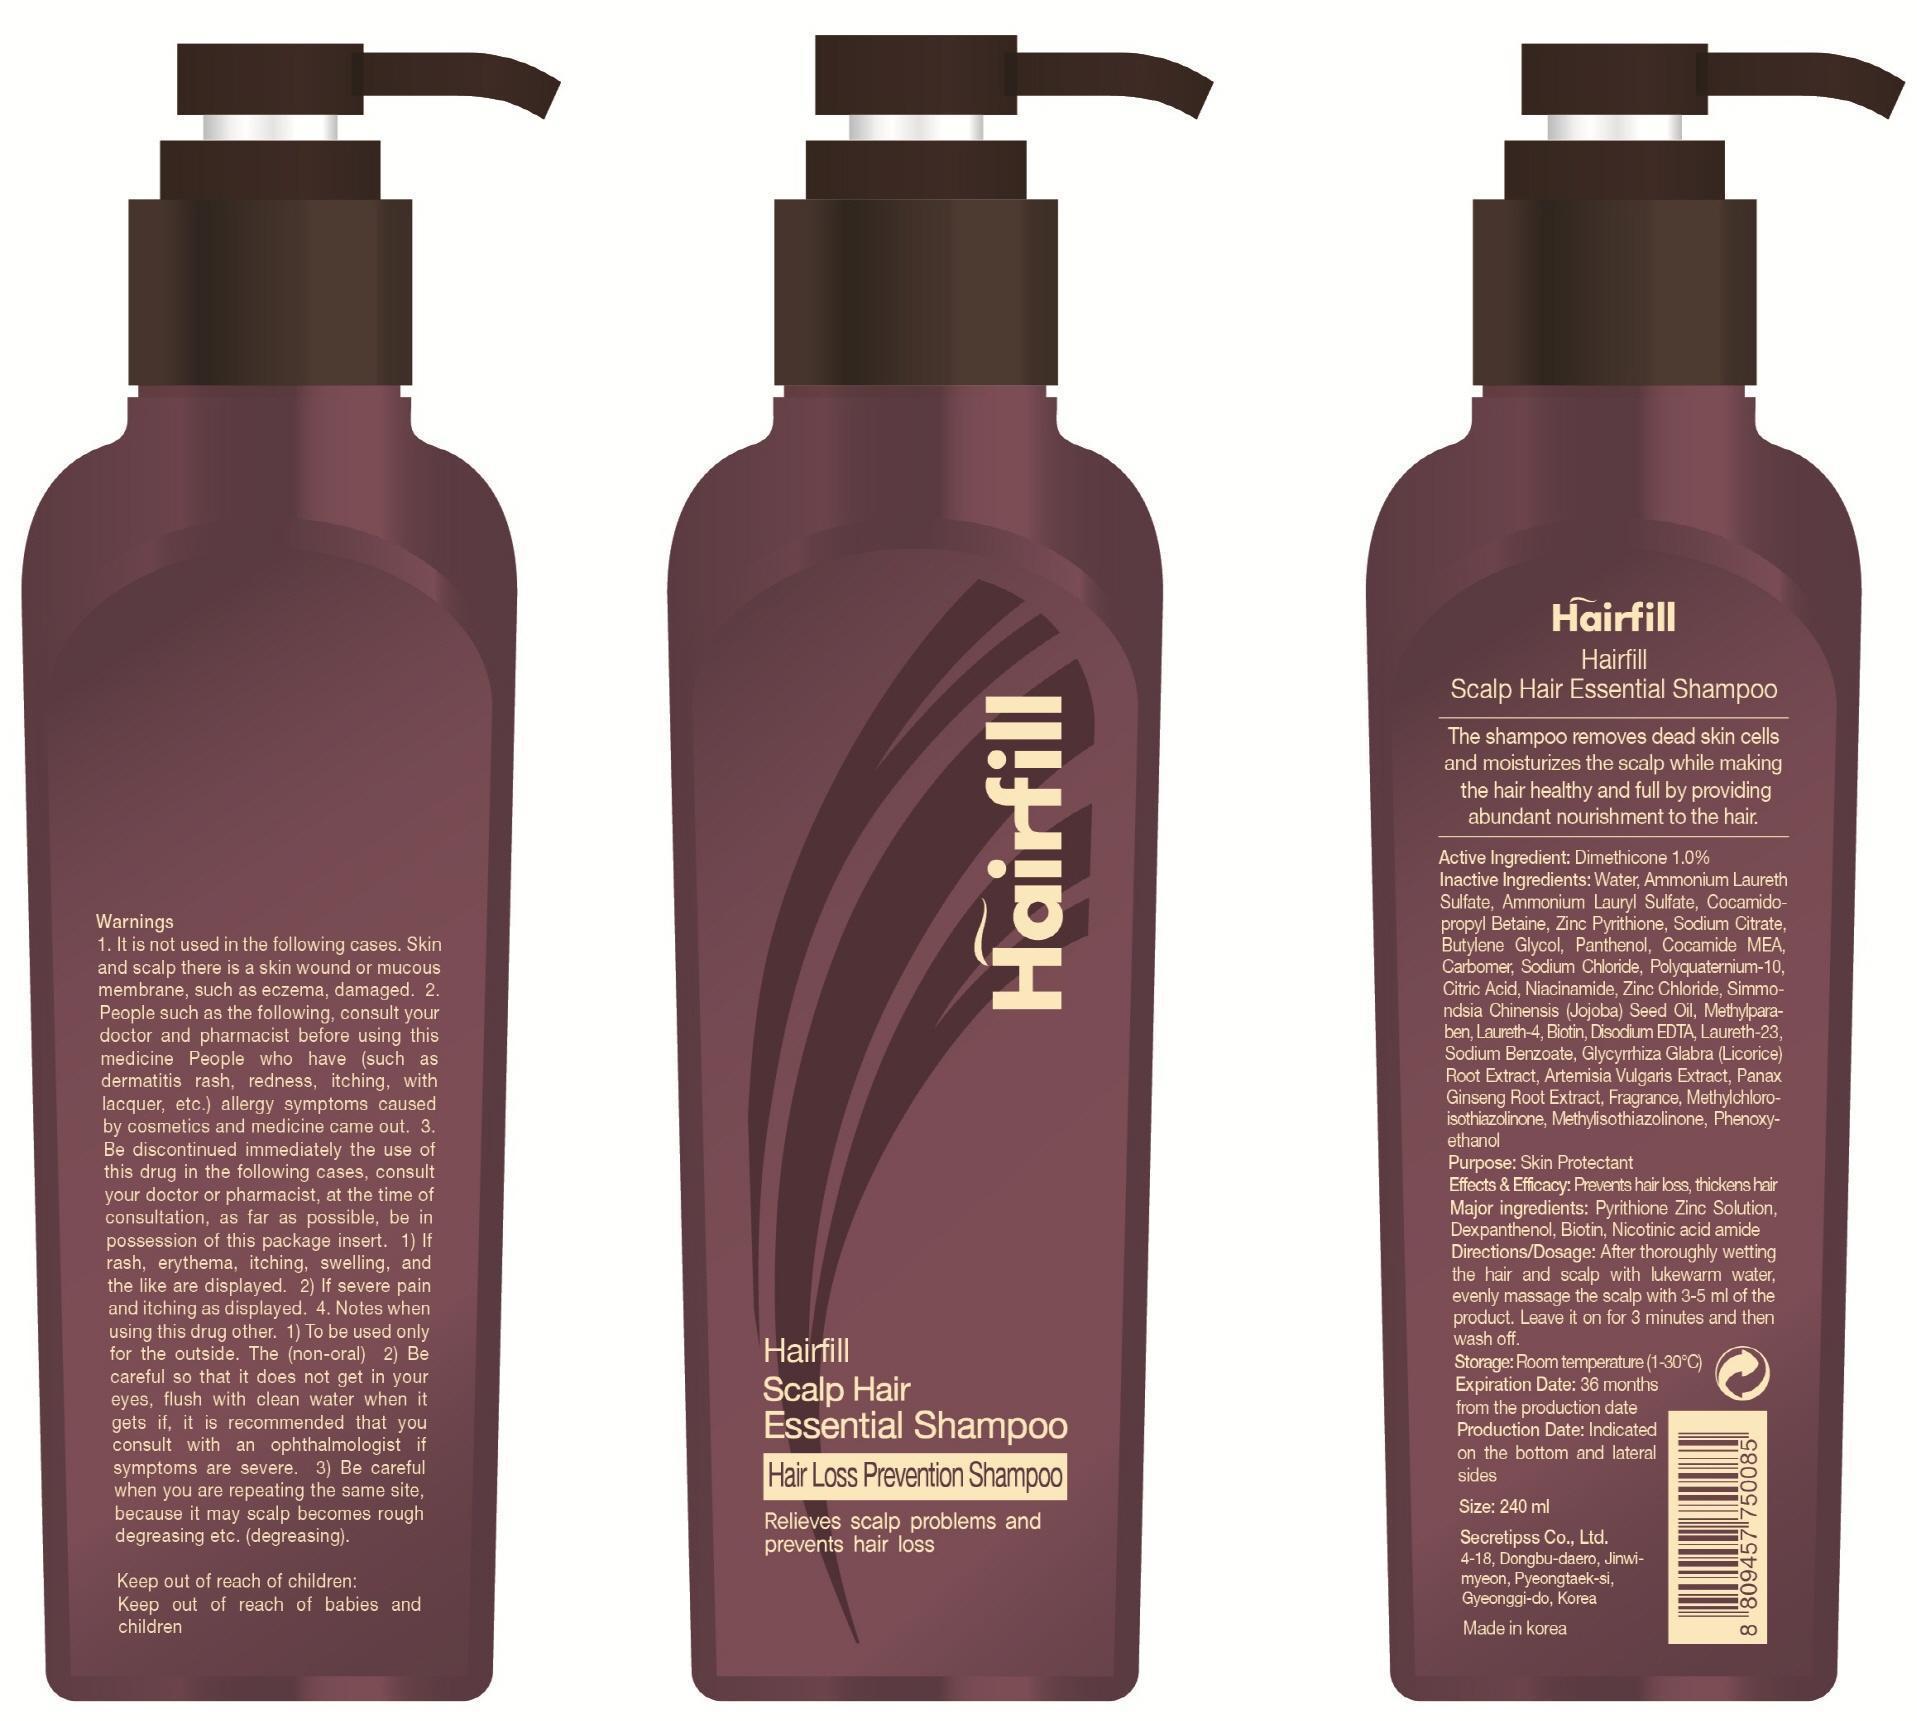 HAIRFILL SCALP HAIR ESSENTIAL- dimethicone shampoo